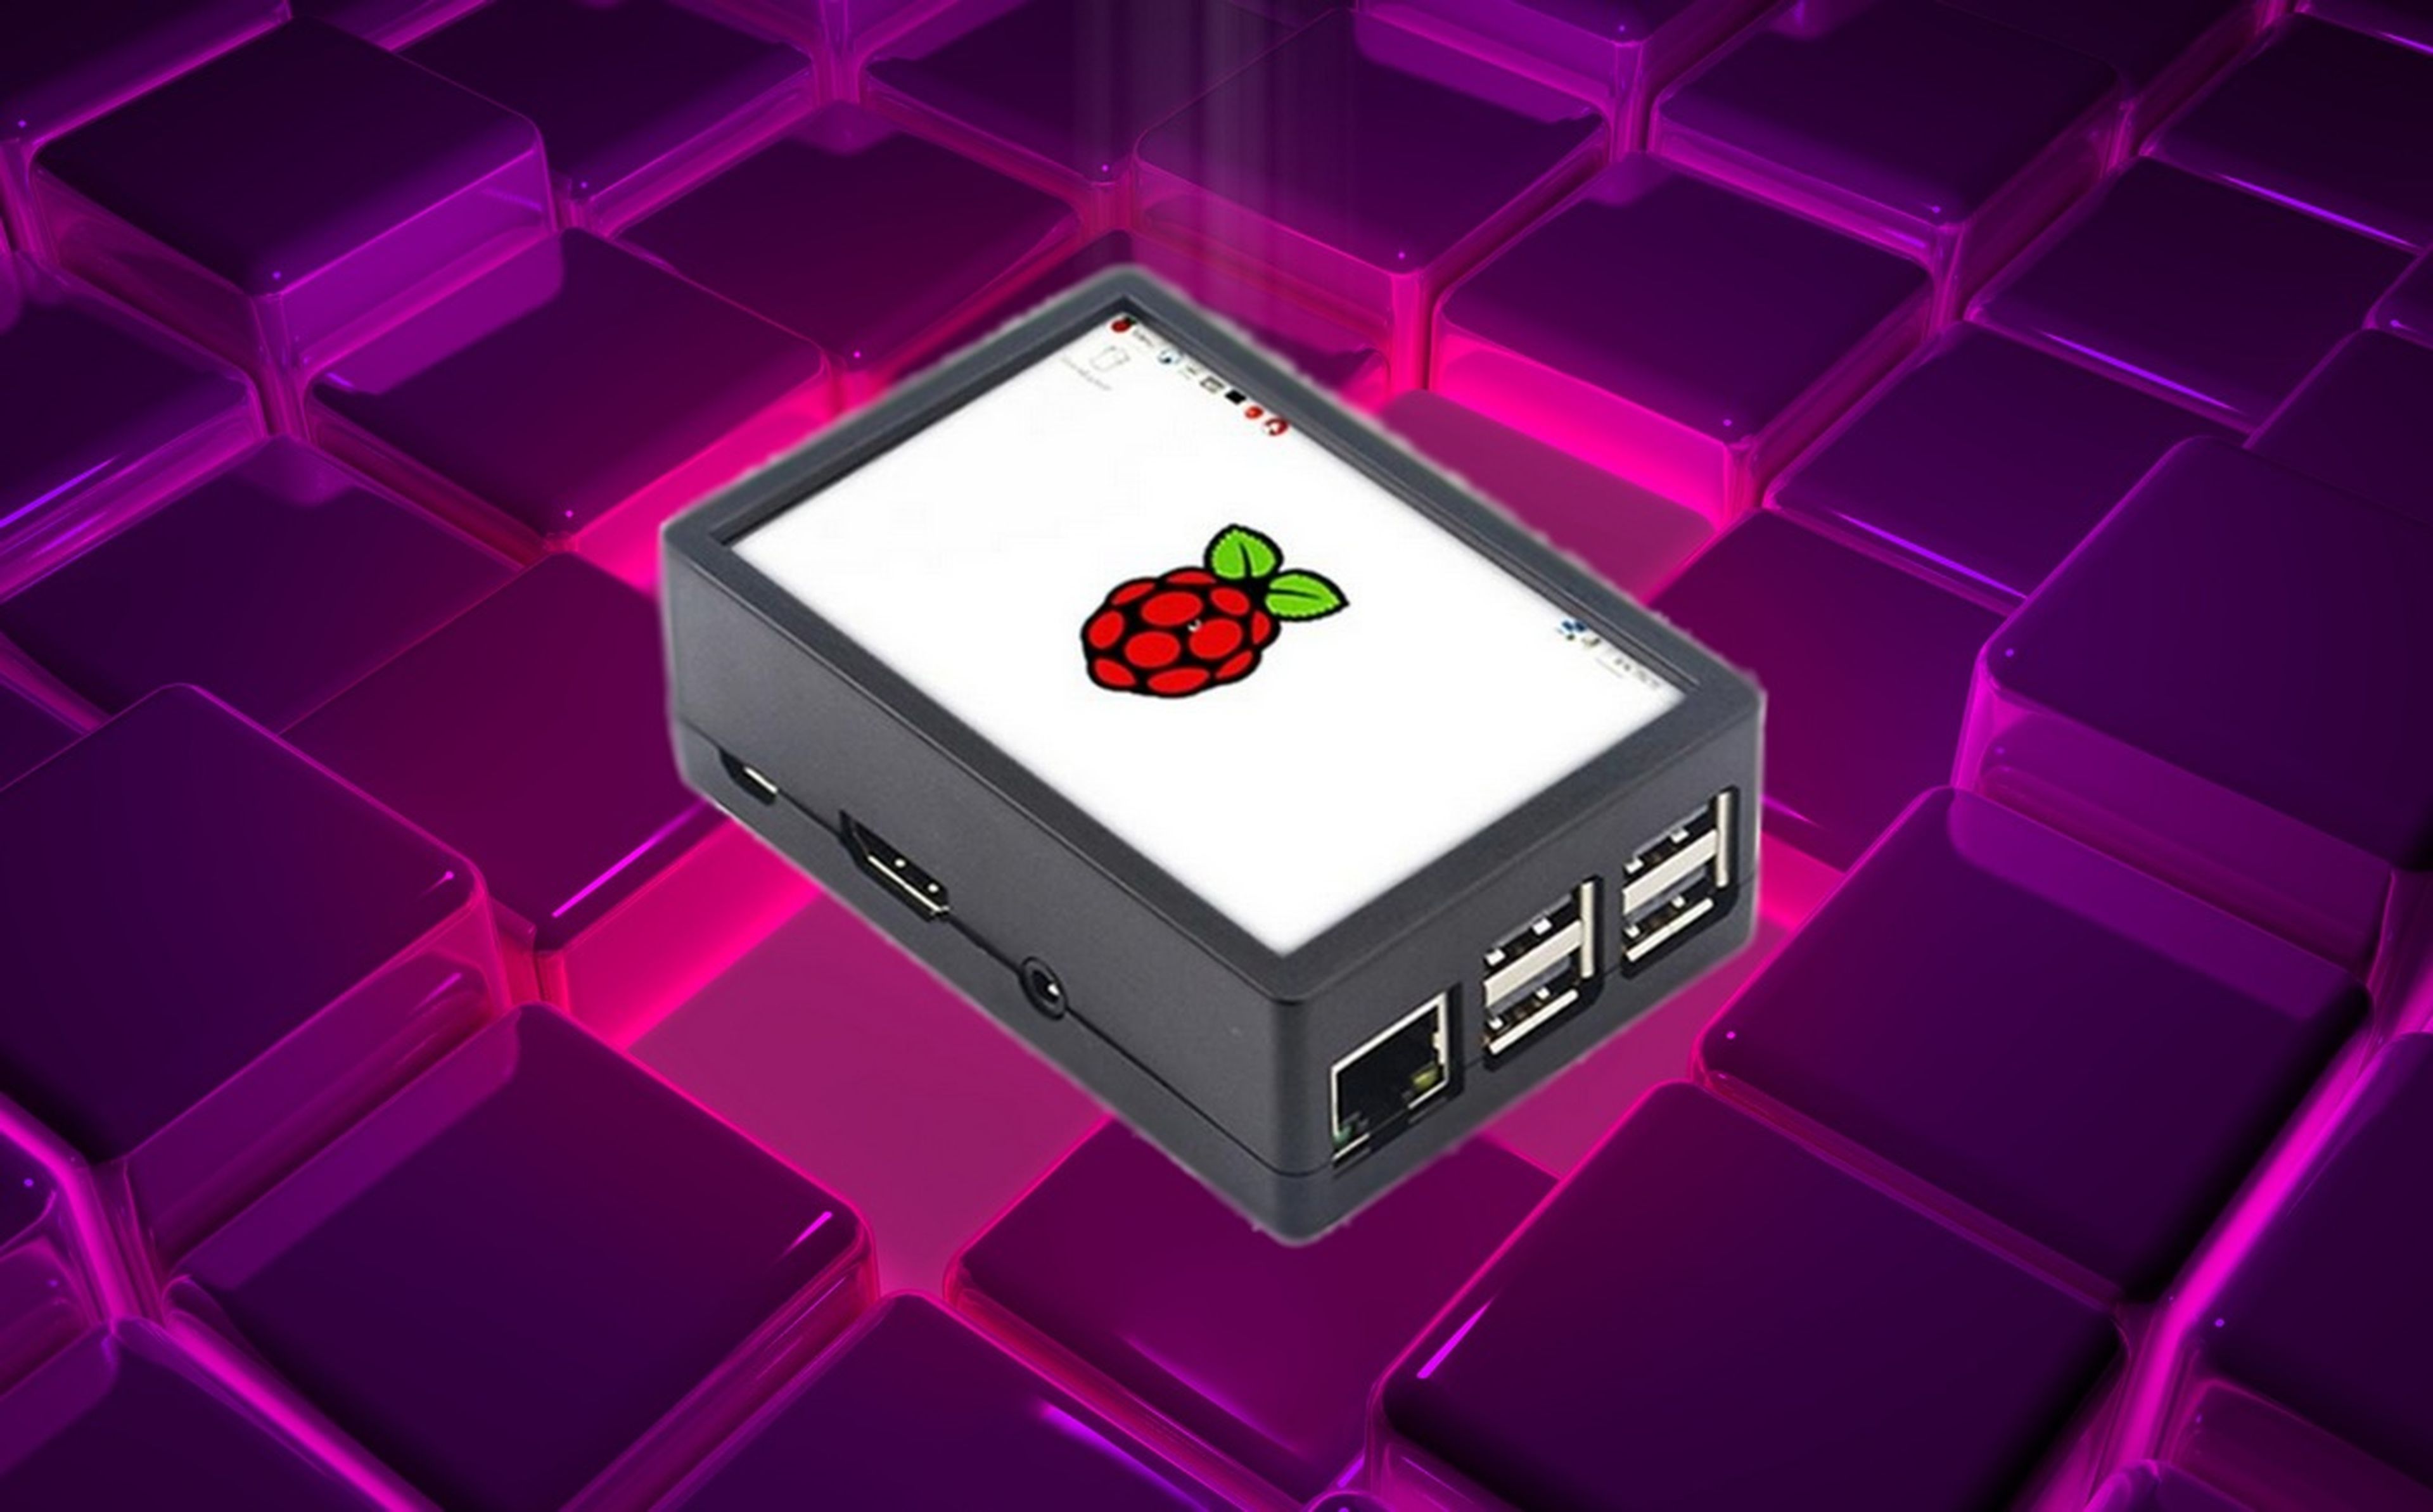 Si tienes una Raspberry Pi, esta carcasa con pantalla táctil puede ser muy útil